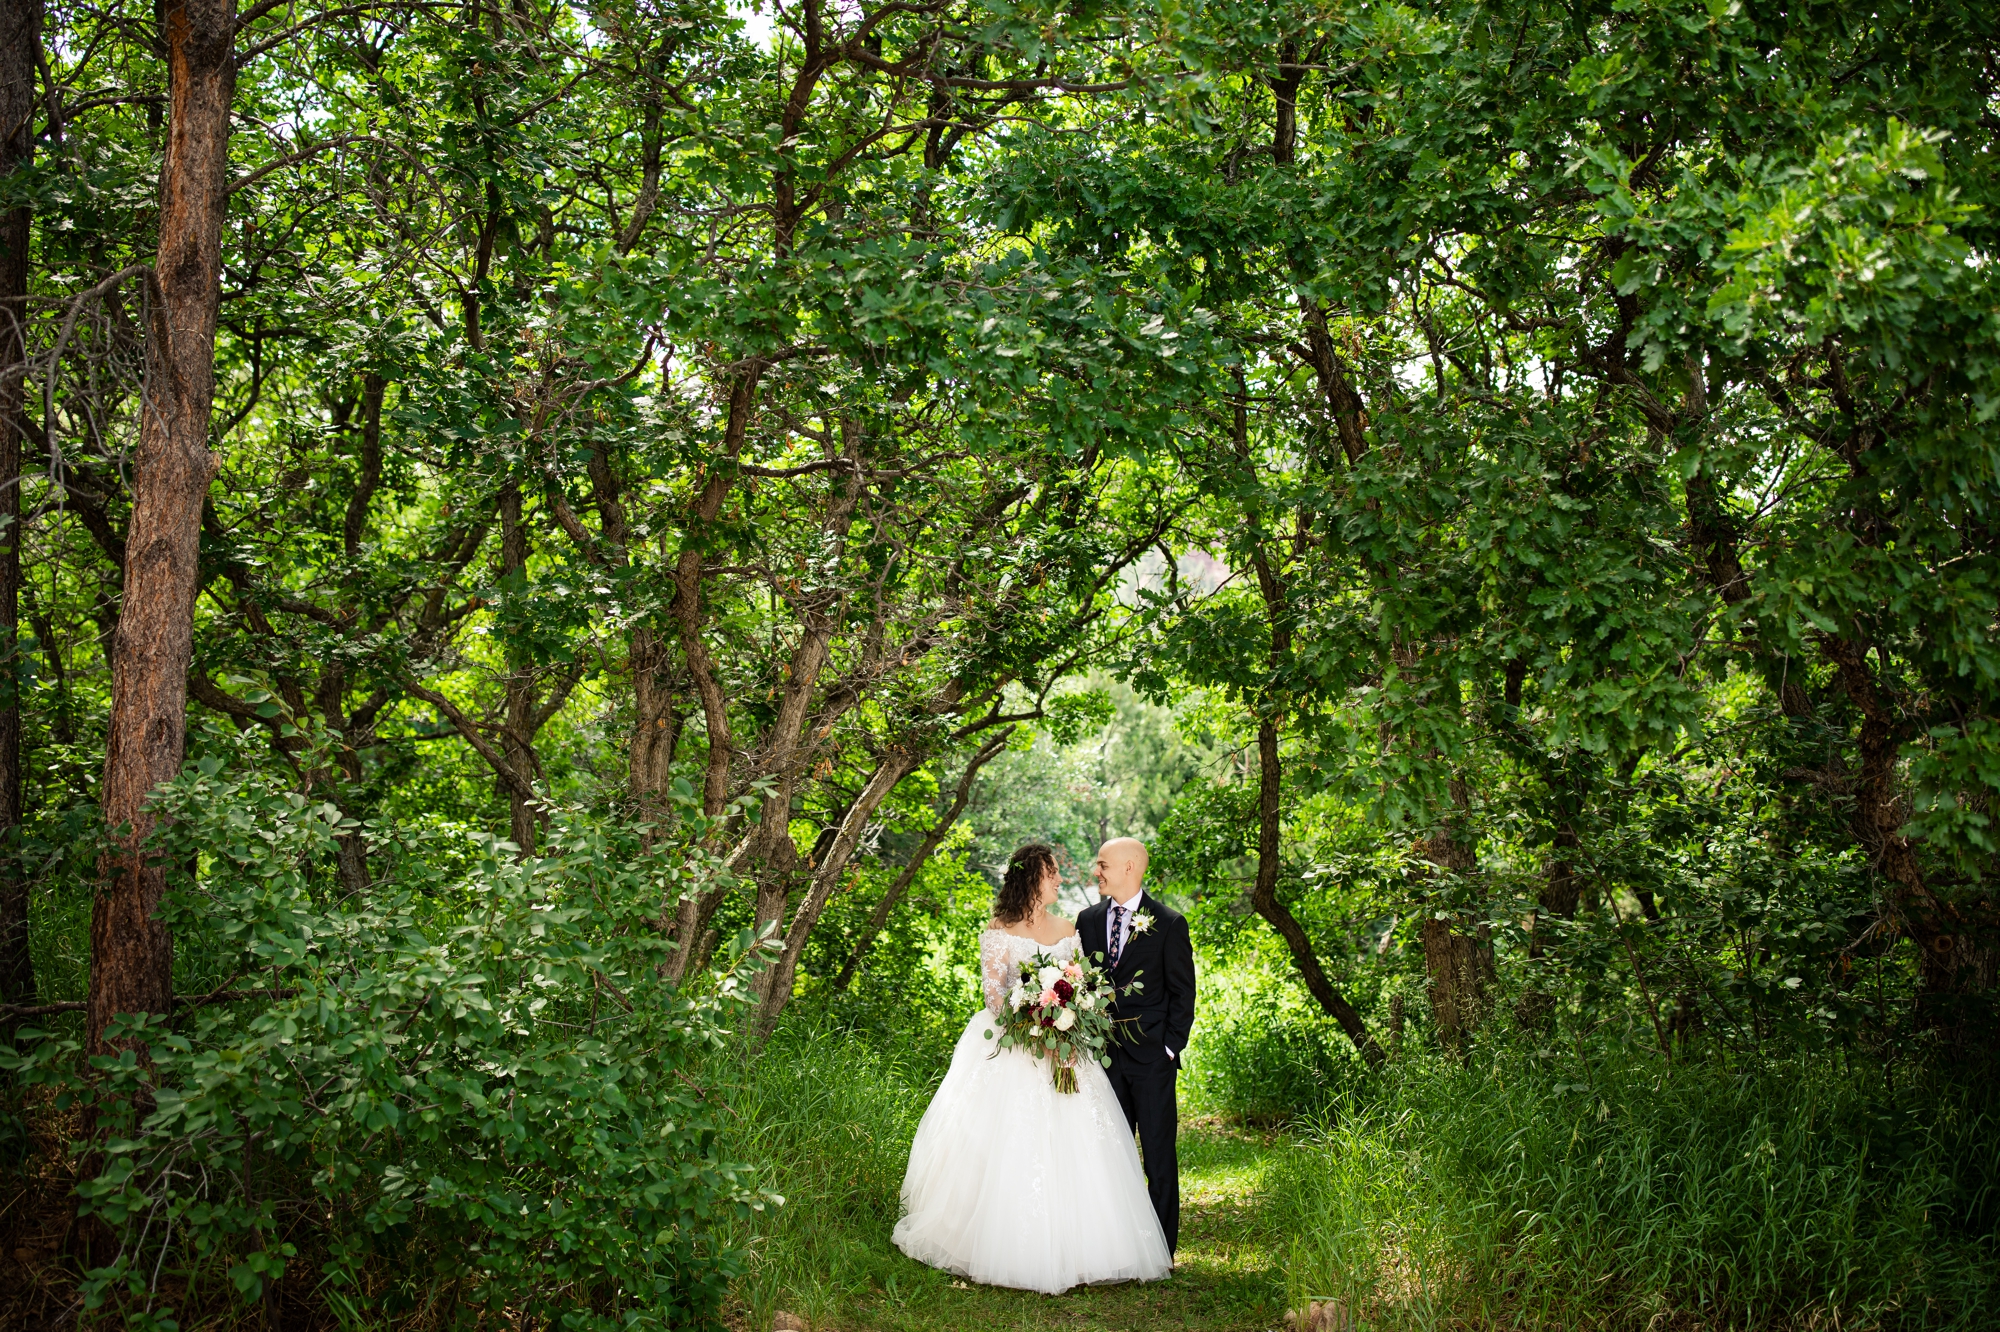 Pinecrest Wedding, Colorado Springs Wedding Venues, Pinecrest Wedding Photos, Monument Colorado Weddings